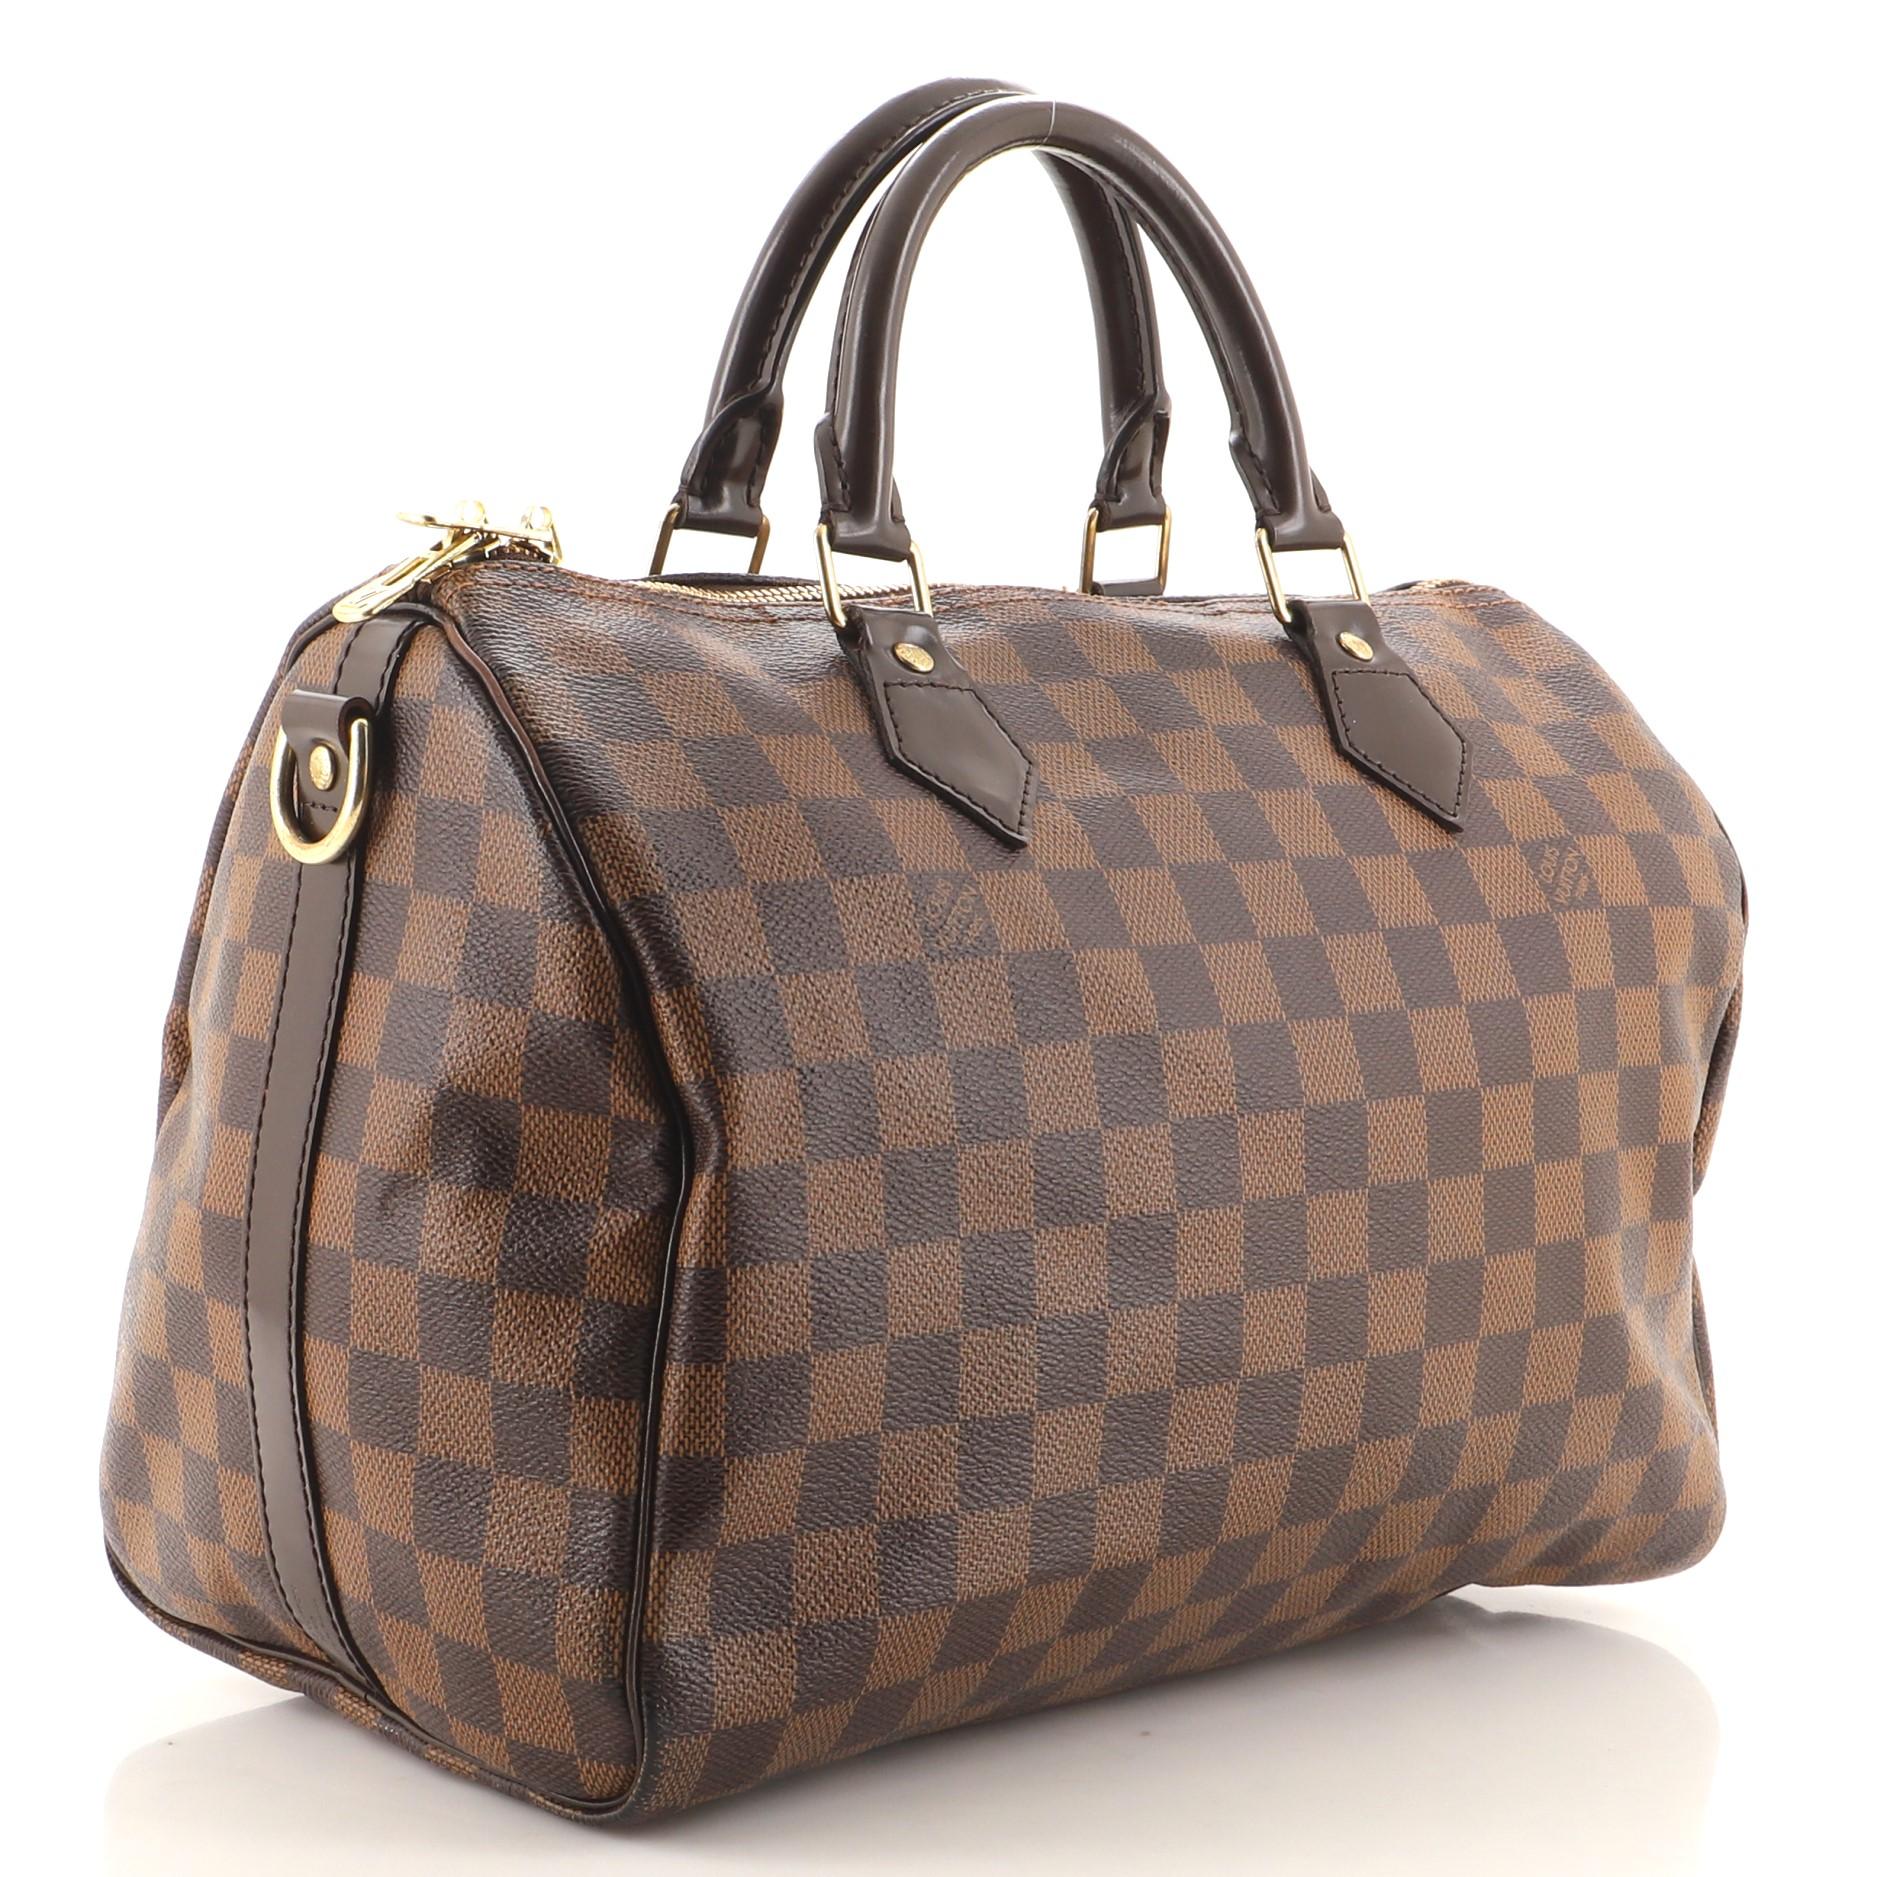 Black Louis Vuitton Speedy Bandouliere Bag Damier 30 For Sale